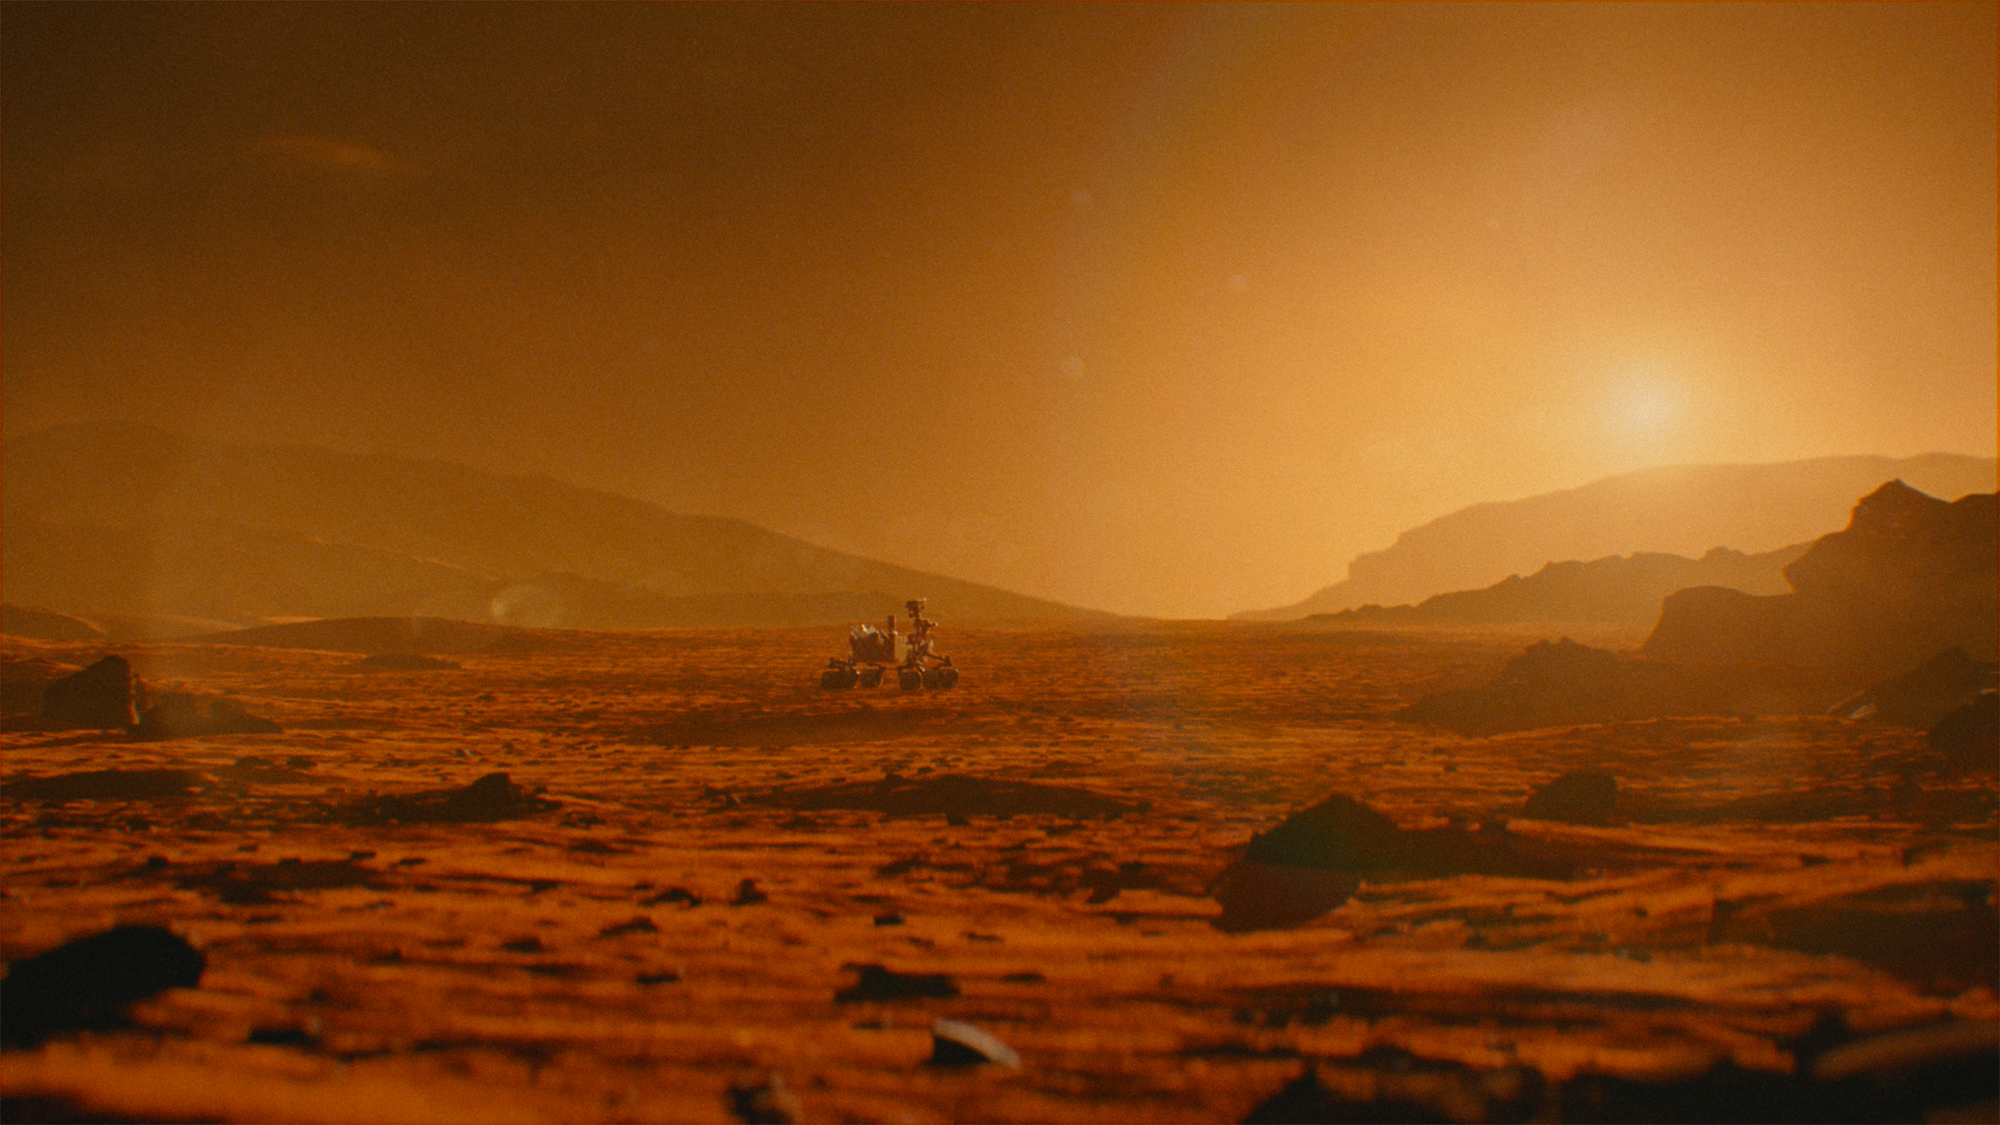 Le rover Curiosity de la Nasa parcoure le cratère Gale et ses environs depuis 10 ans.&nbsp;© Husqvarna, Nasa